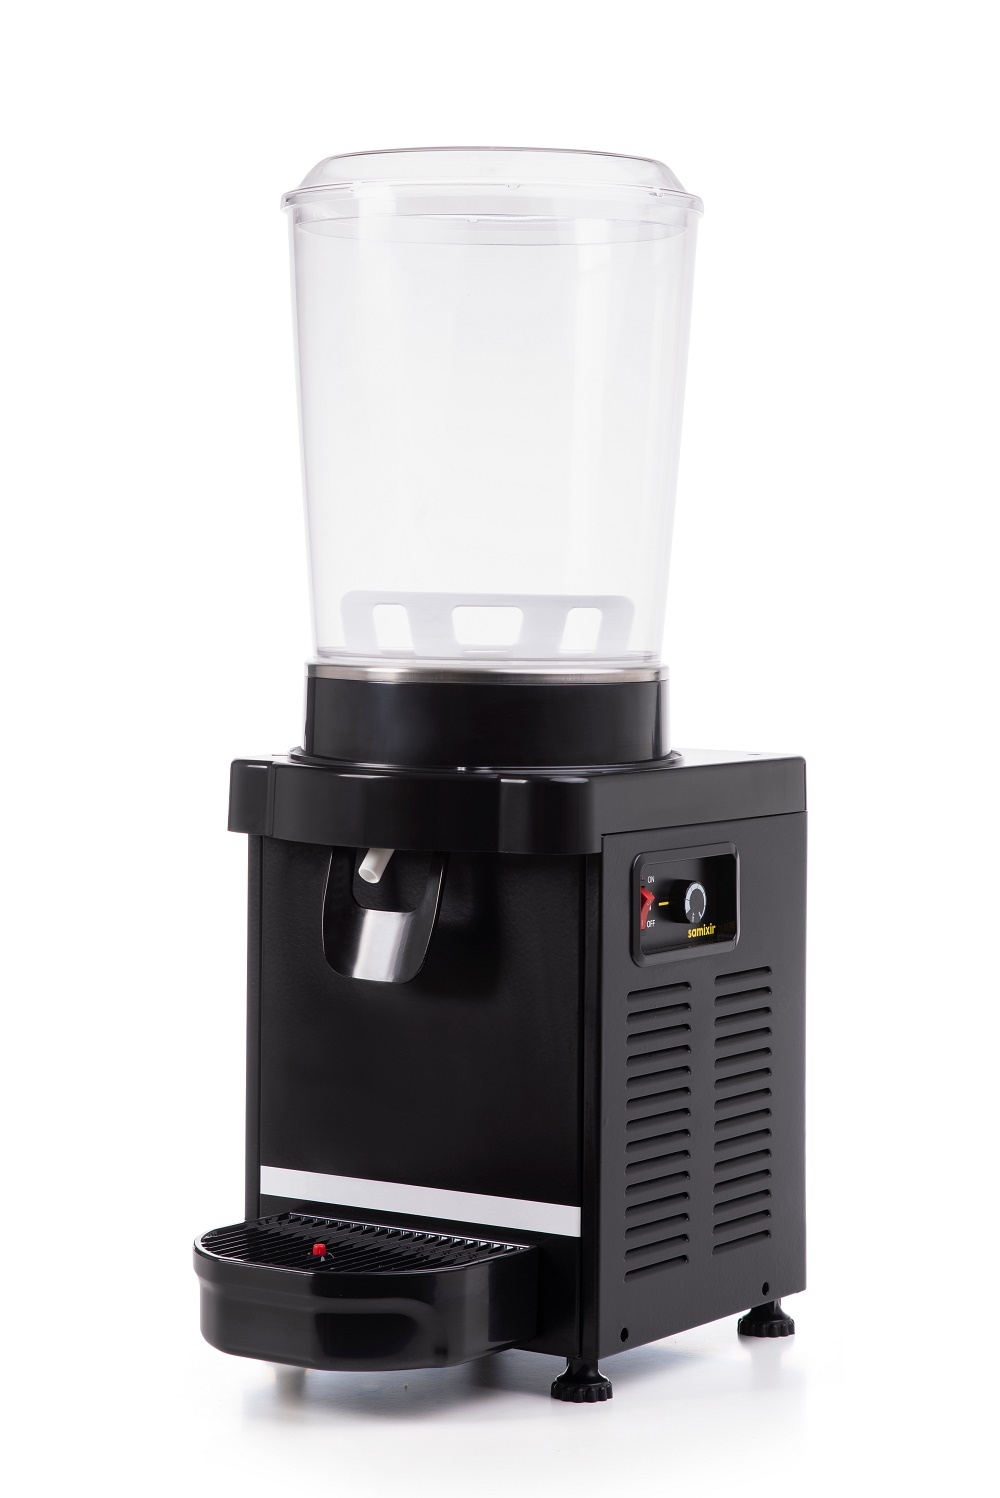 Kaltgetränke-Dispenser | 10 Liter | +3/+10 °C | 250x390x(h)700mm